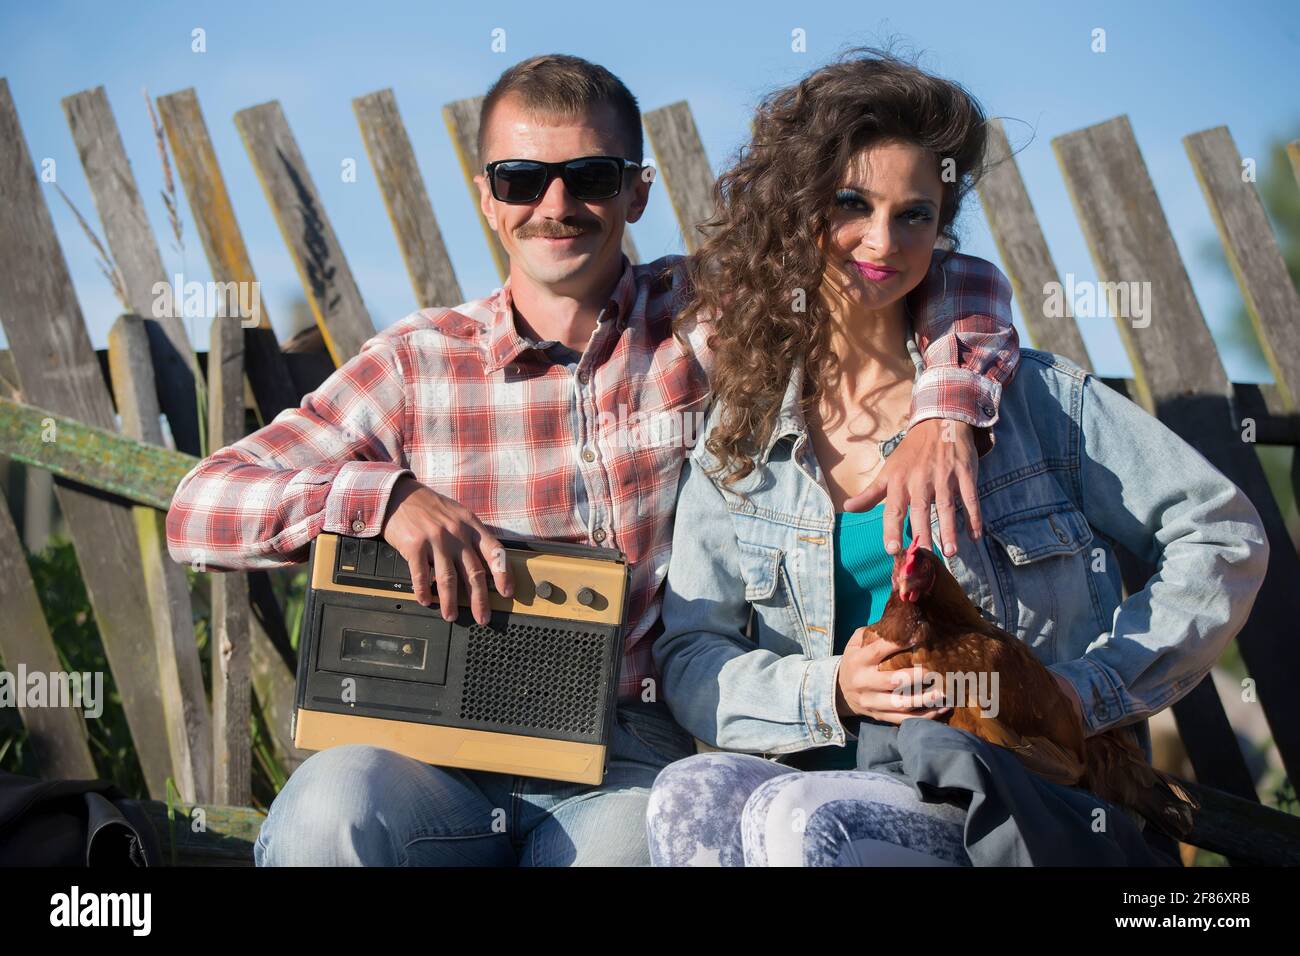 Una ragazza con un pollo e un uomo con un magnetofono retrò sono seduti sulla panchina. Gli abitanti del villaggio sono nello stile degli anni novanta. Foto Stock